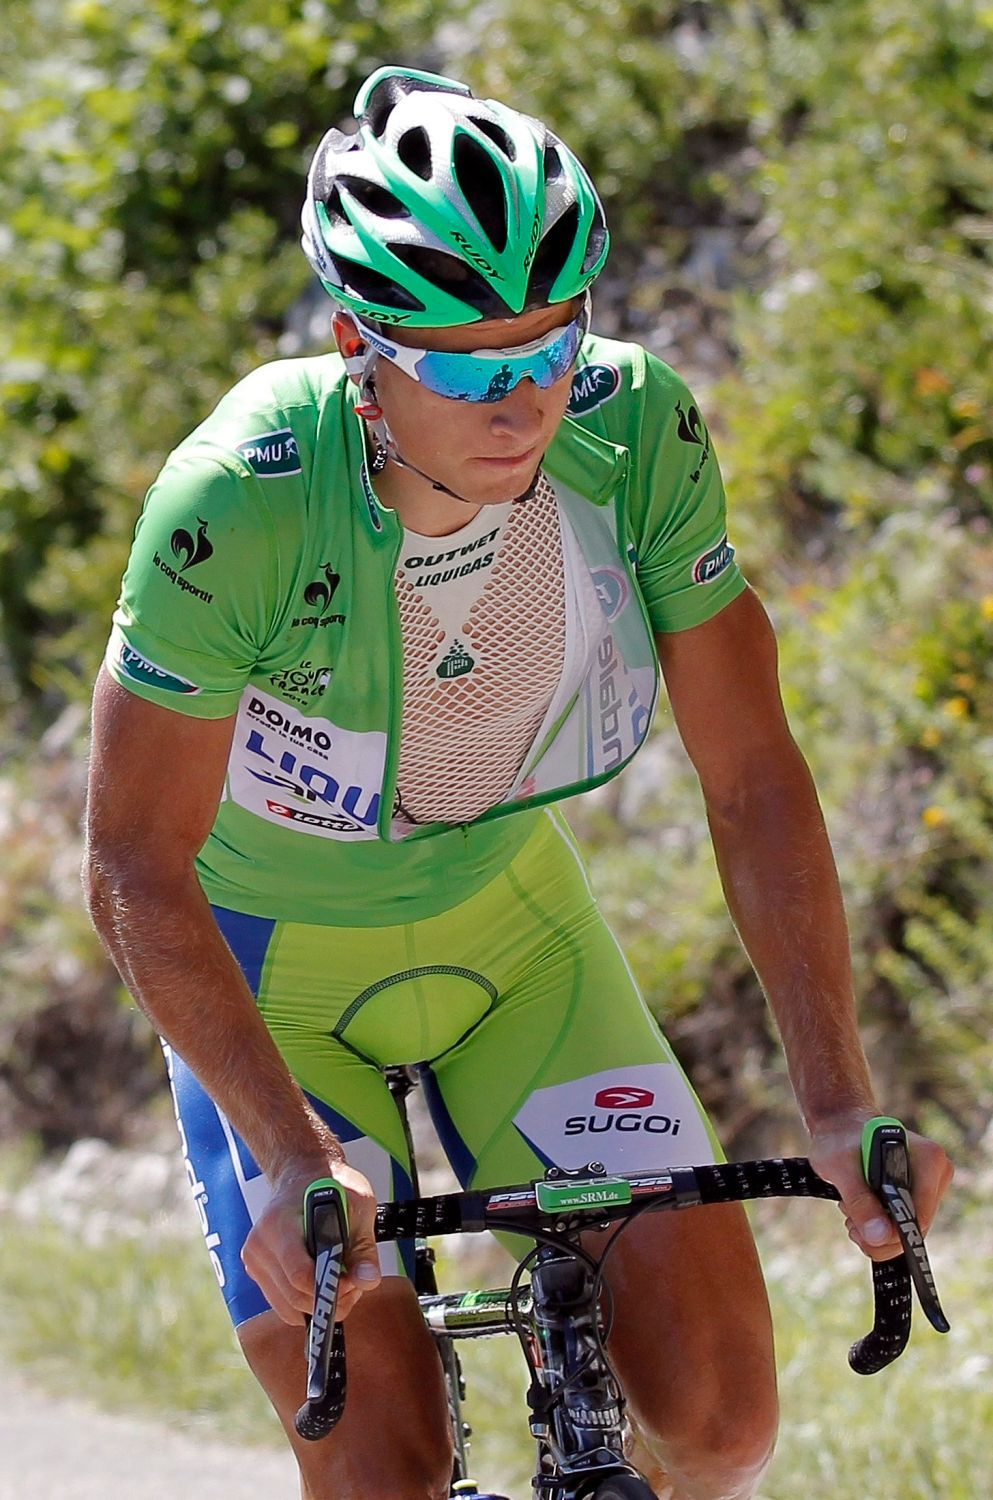 Slovenský cyklista Peter Sagan ze stáje Liquigas-Cannondale během desáté etapy Tou de France 2012.